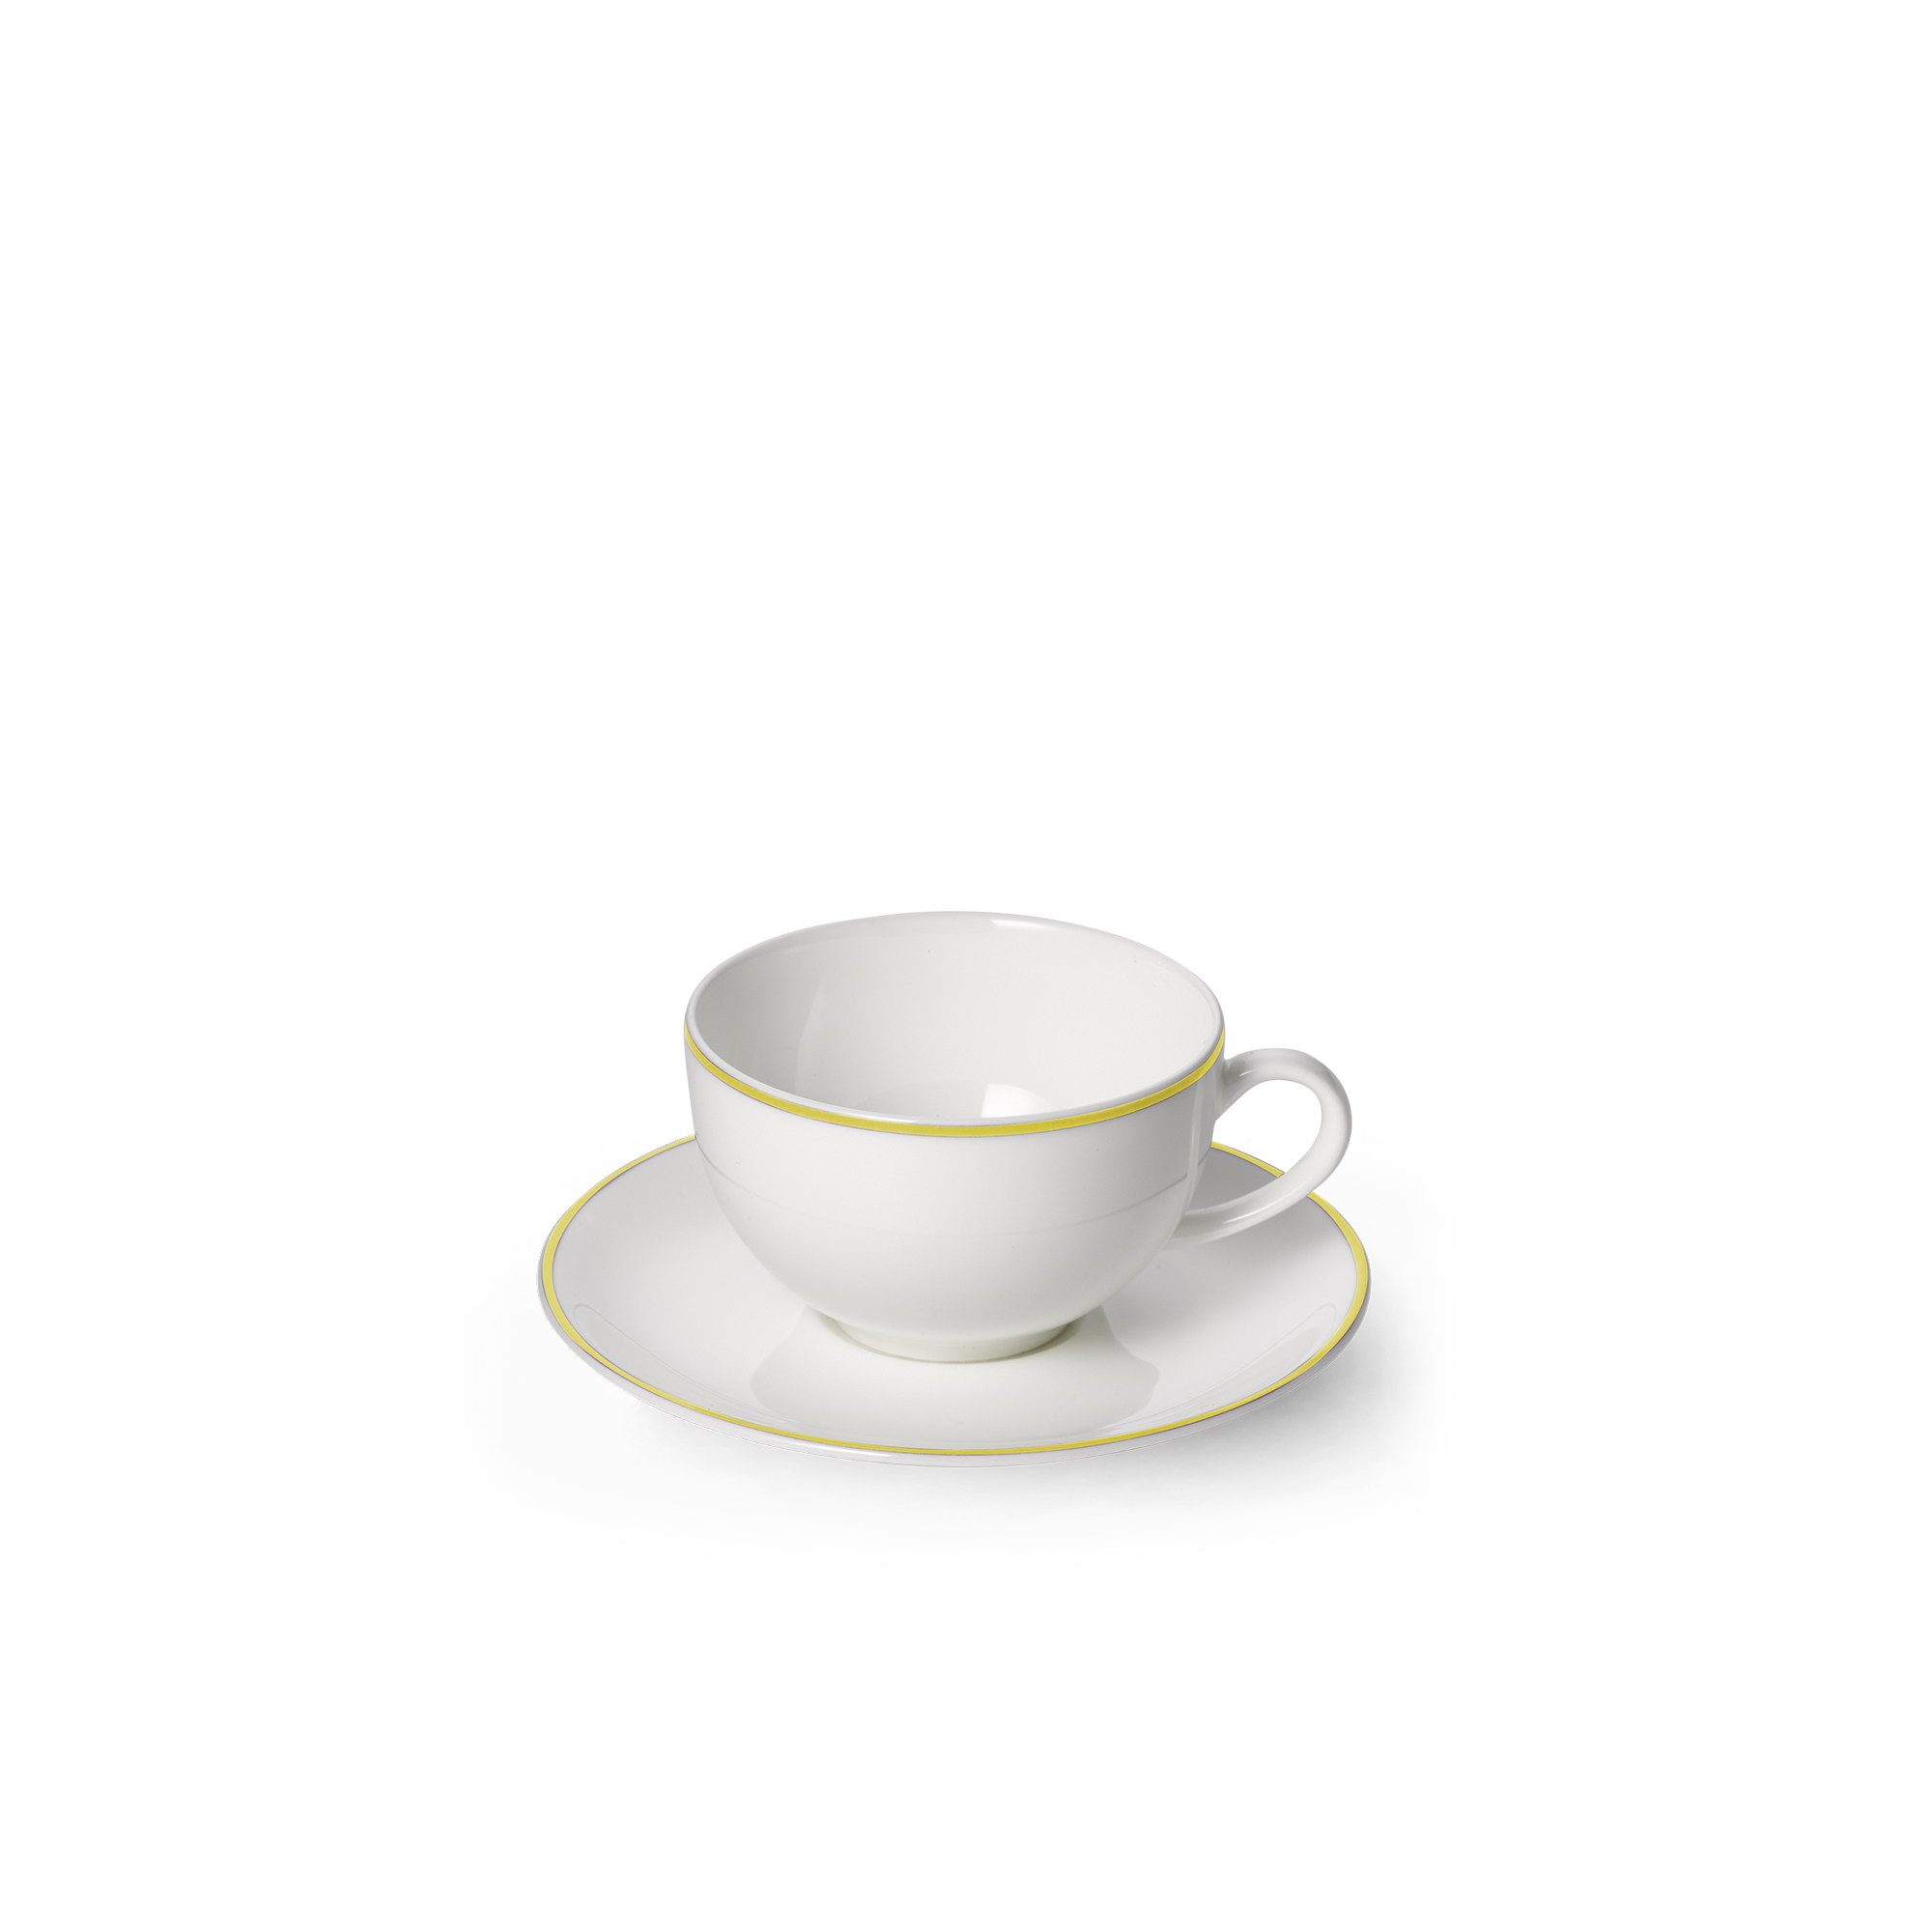 Simplicity yellow espresso cup